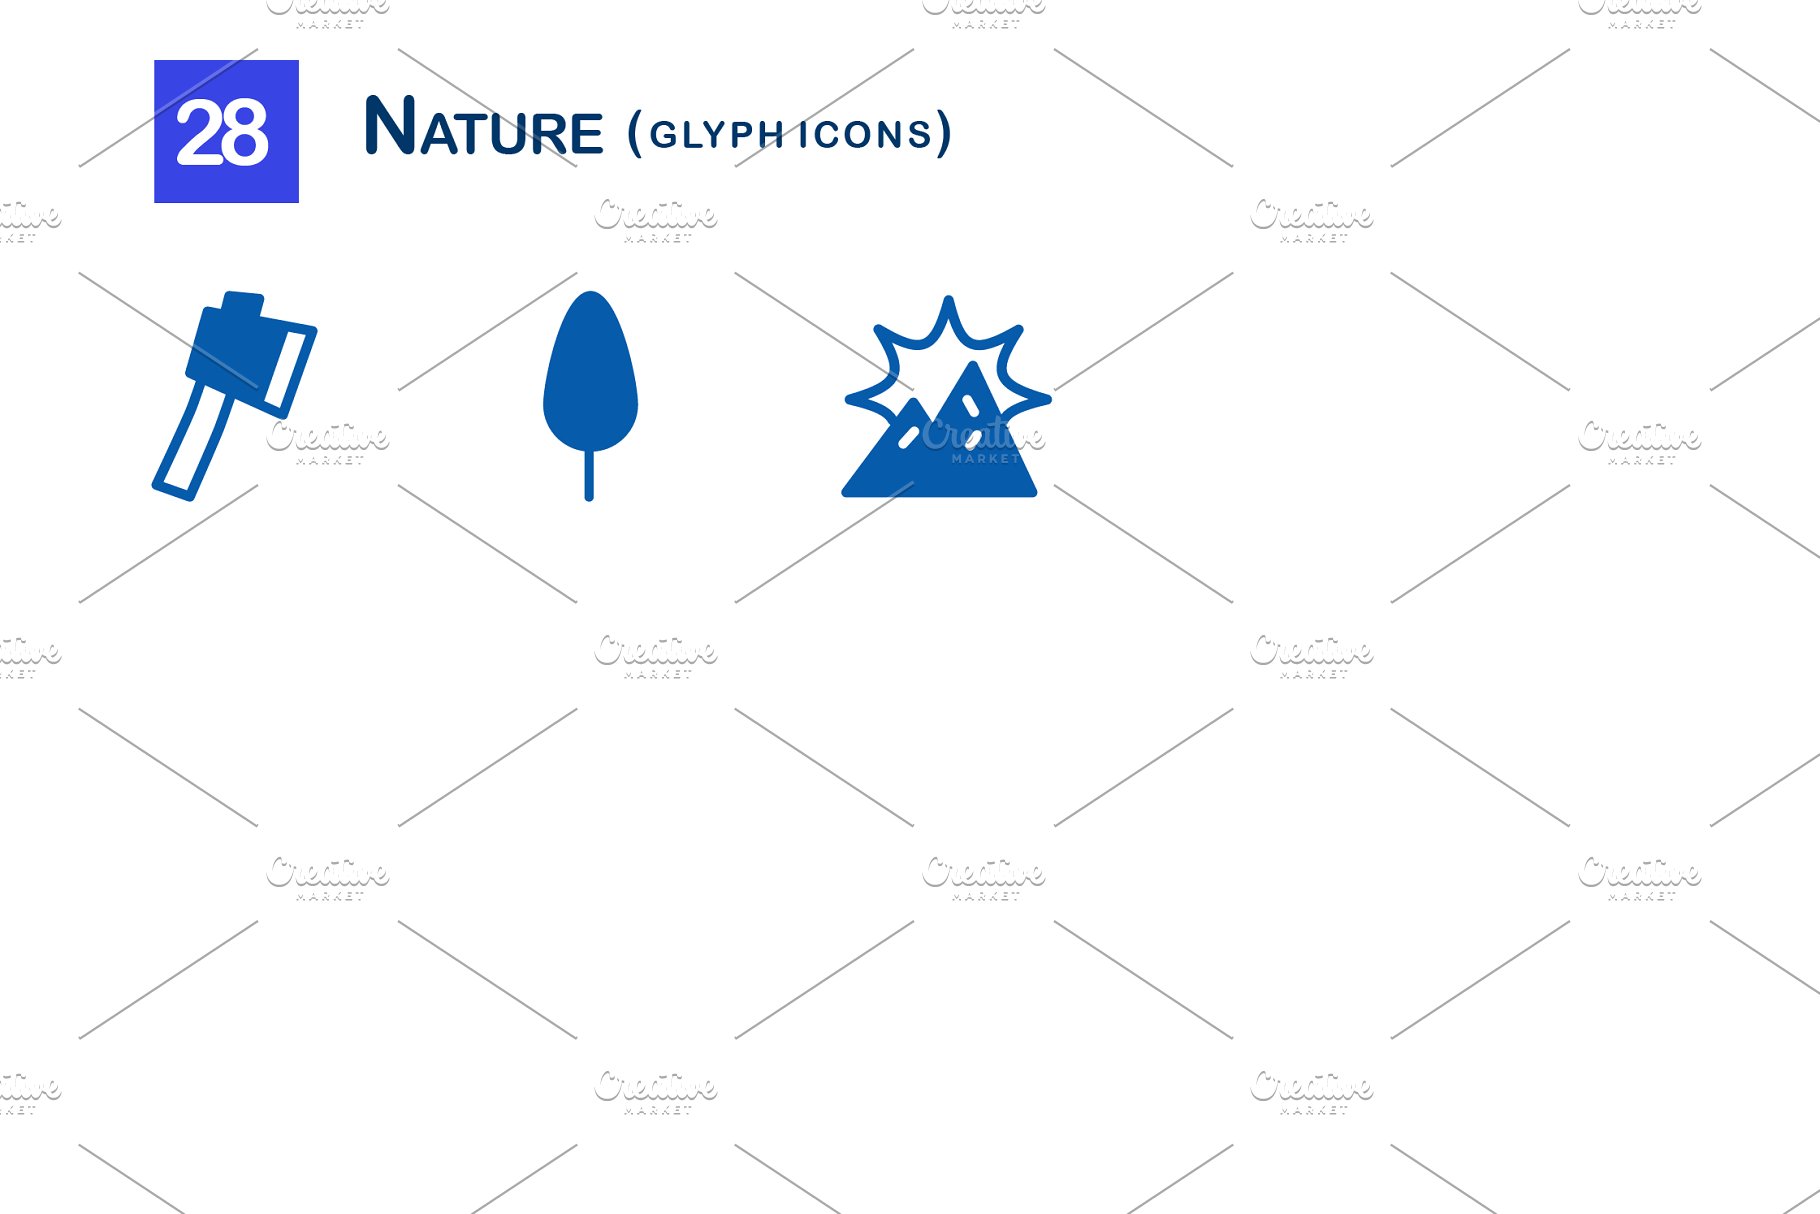 28个大自然元素字体第一素材精选图标 28 Nature Glyph Icons插图(2)